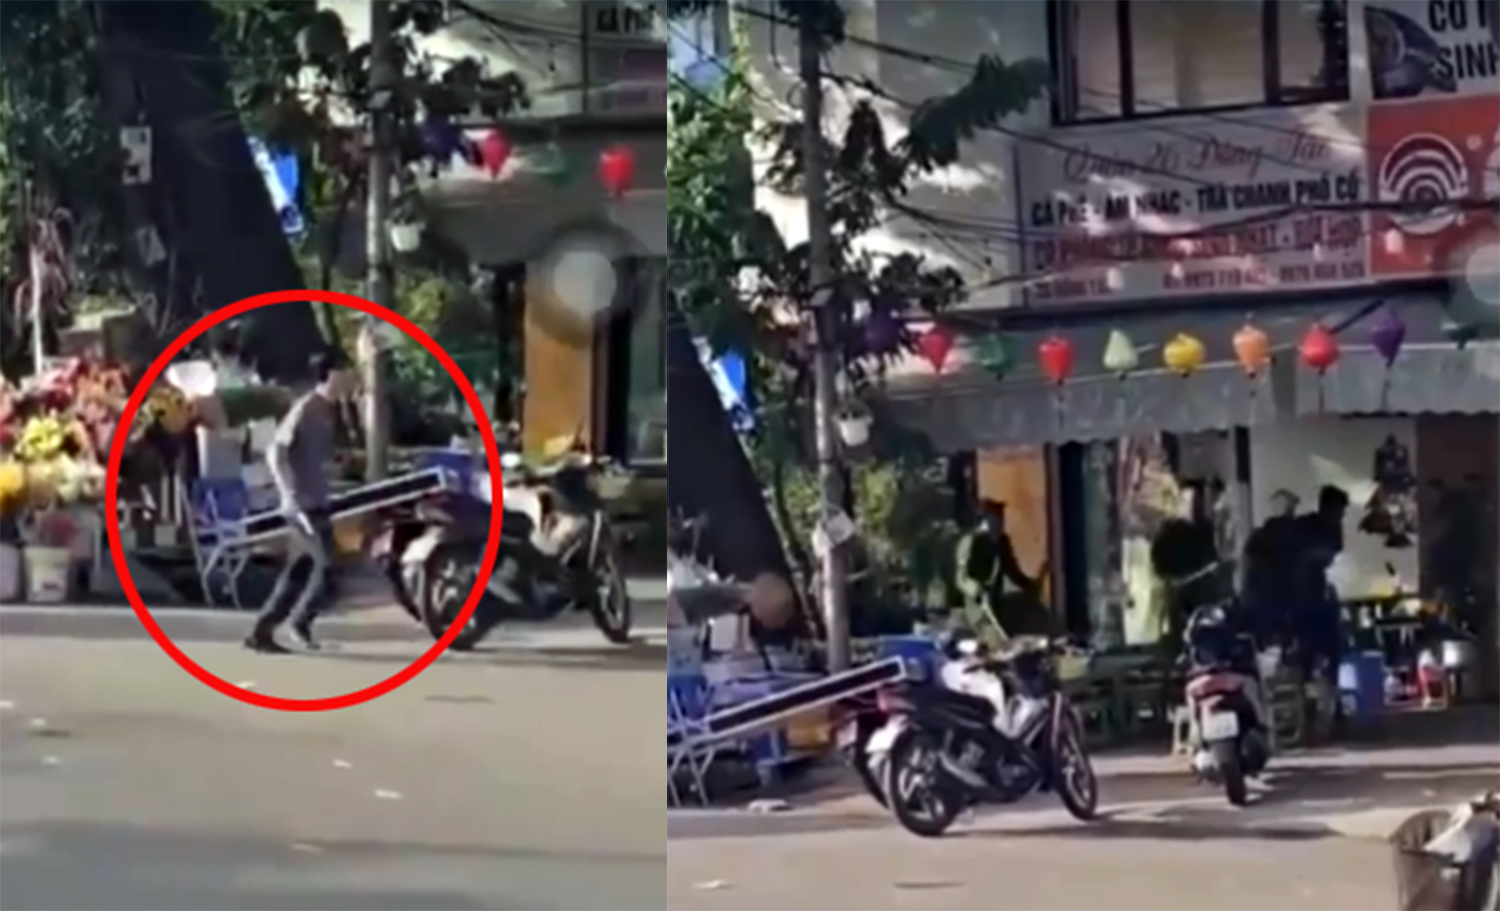 Hà Nội: Một cảnh sát bị thương khi khống chế đối tượng cầm dao trên phố